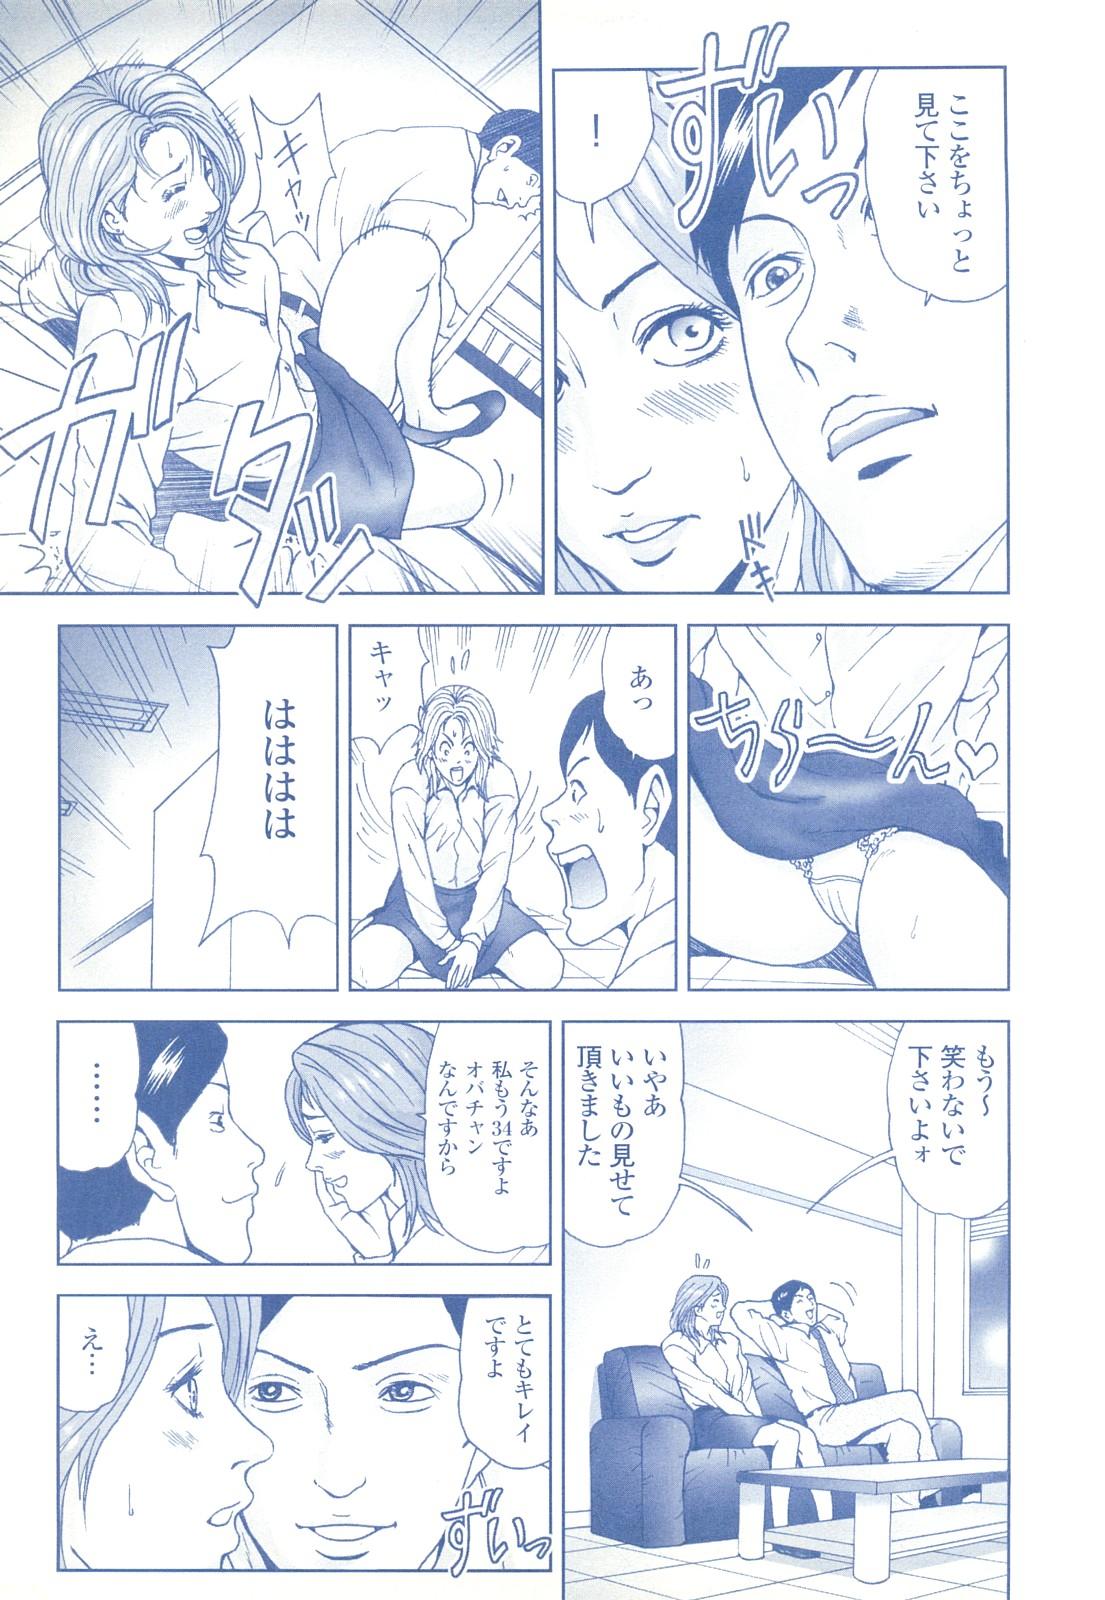 コミック裏モノJAPAN Vol.18 今井のりたつスペシャル号 236